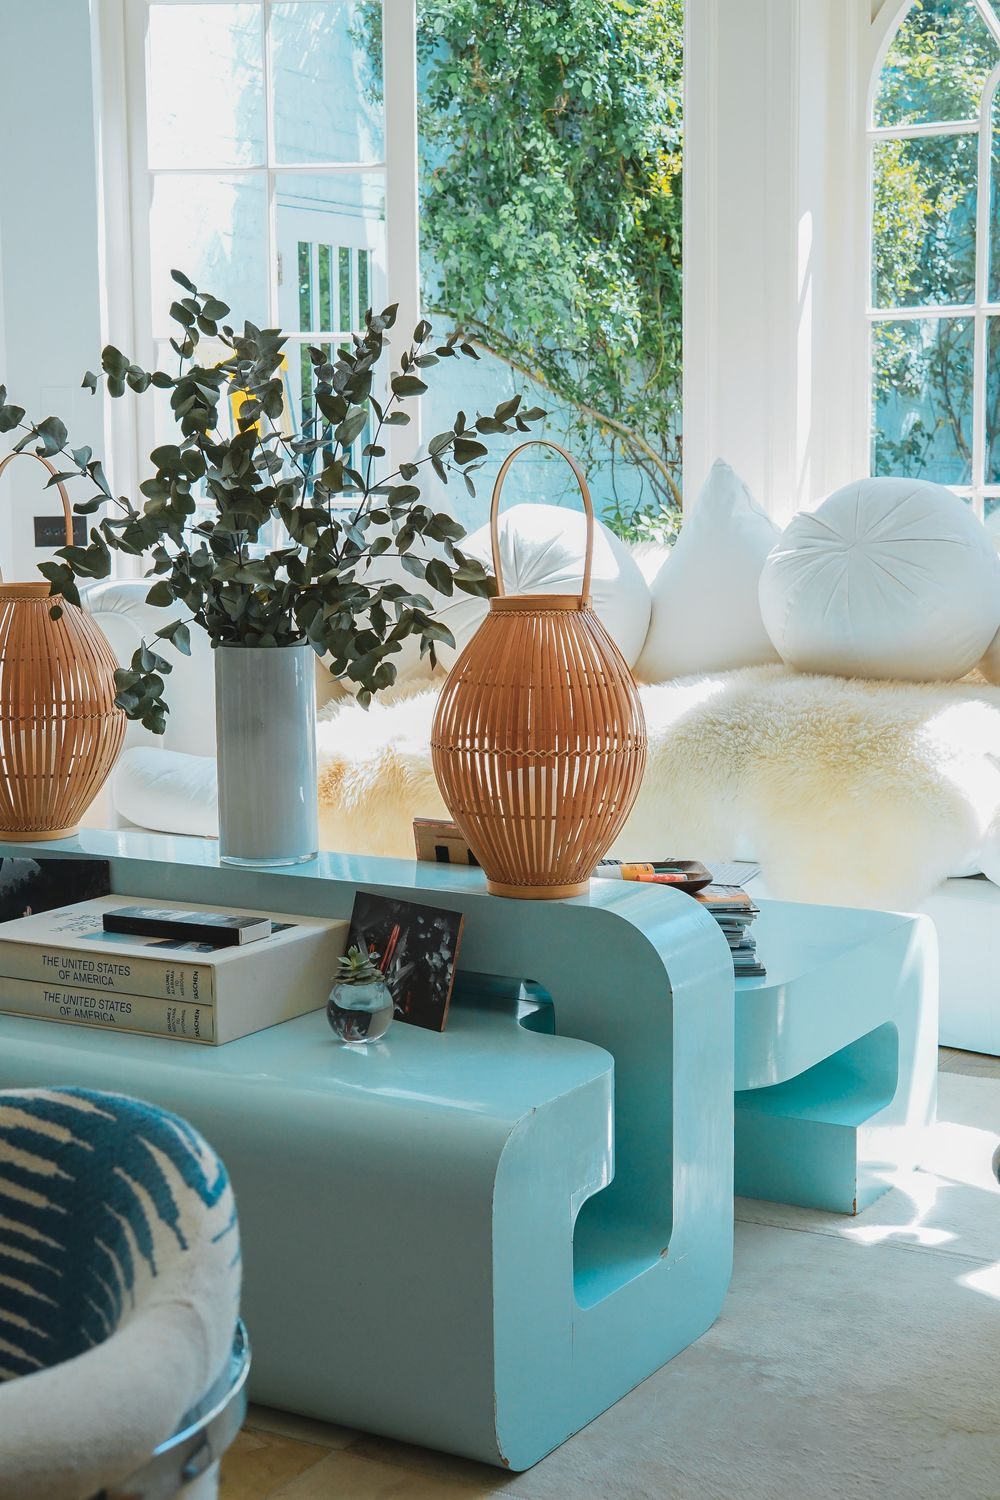 intérieur maximaliste avec une table géométrique bleu clair, des plantes et des matériaux naturels